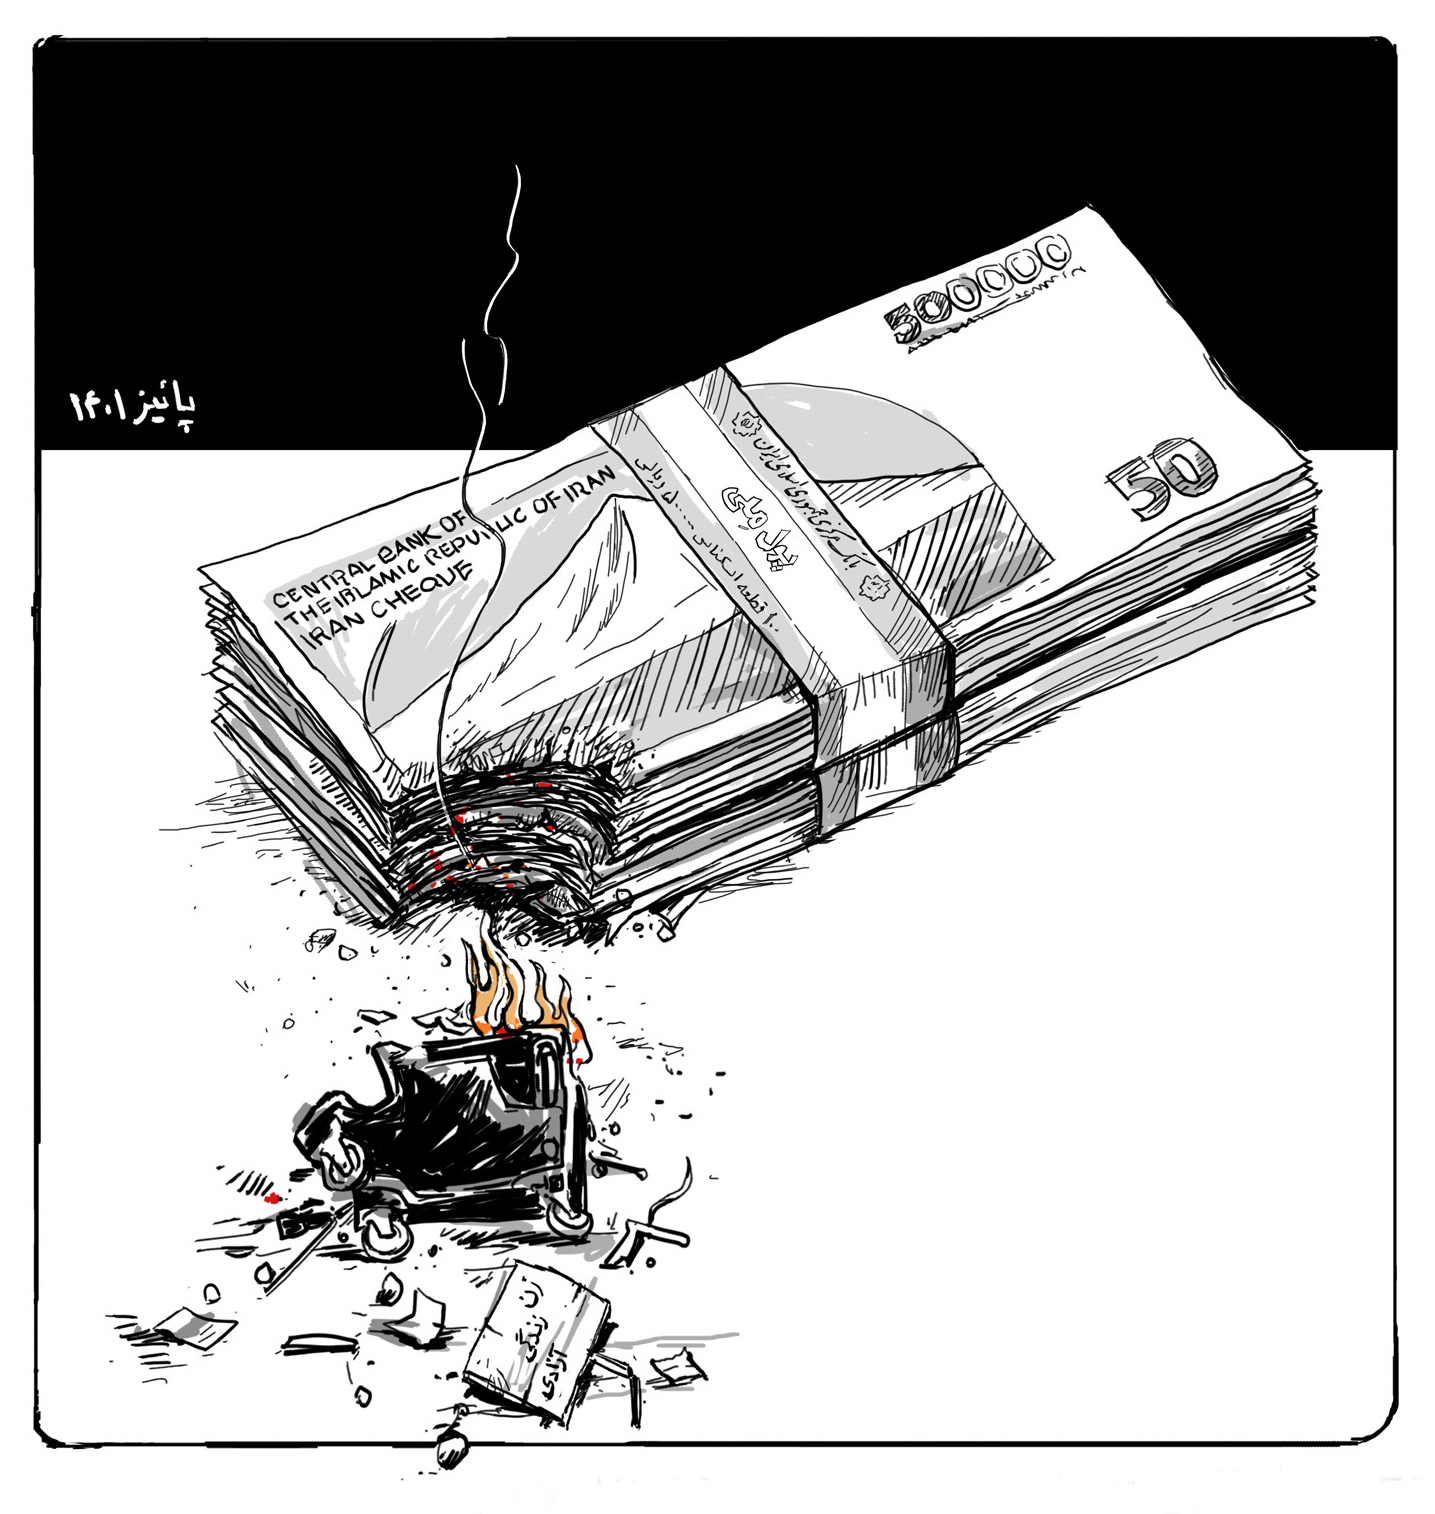 کاریکاتور / تاثیر اغتشاشات بر قیمت ارز و التهاب بازار